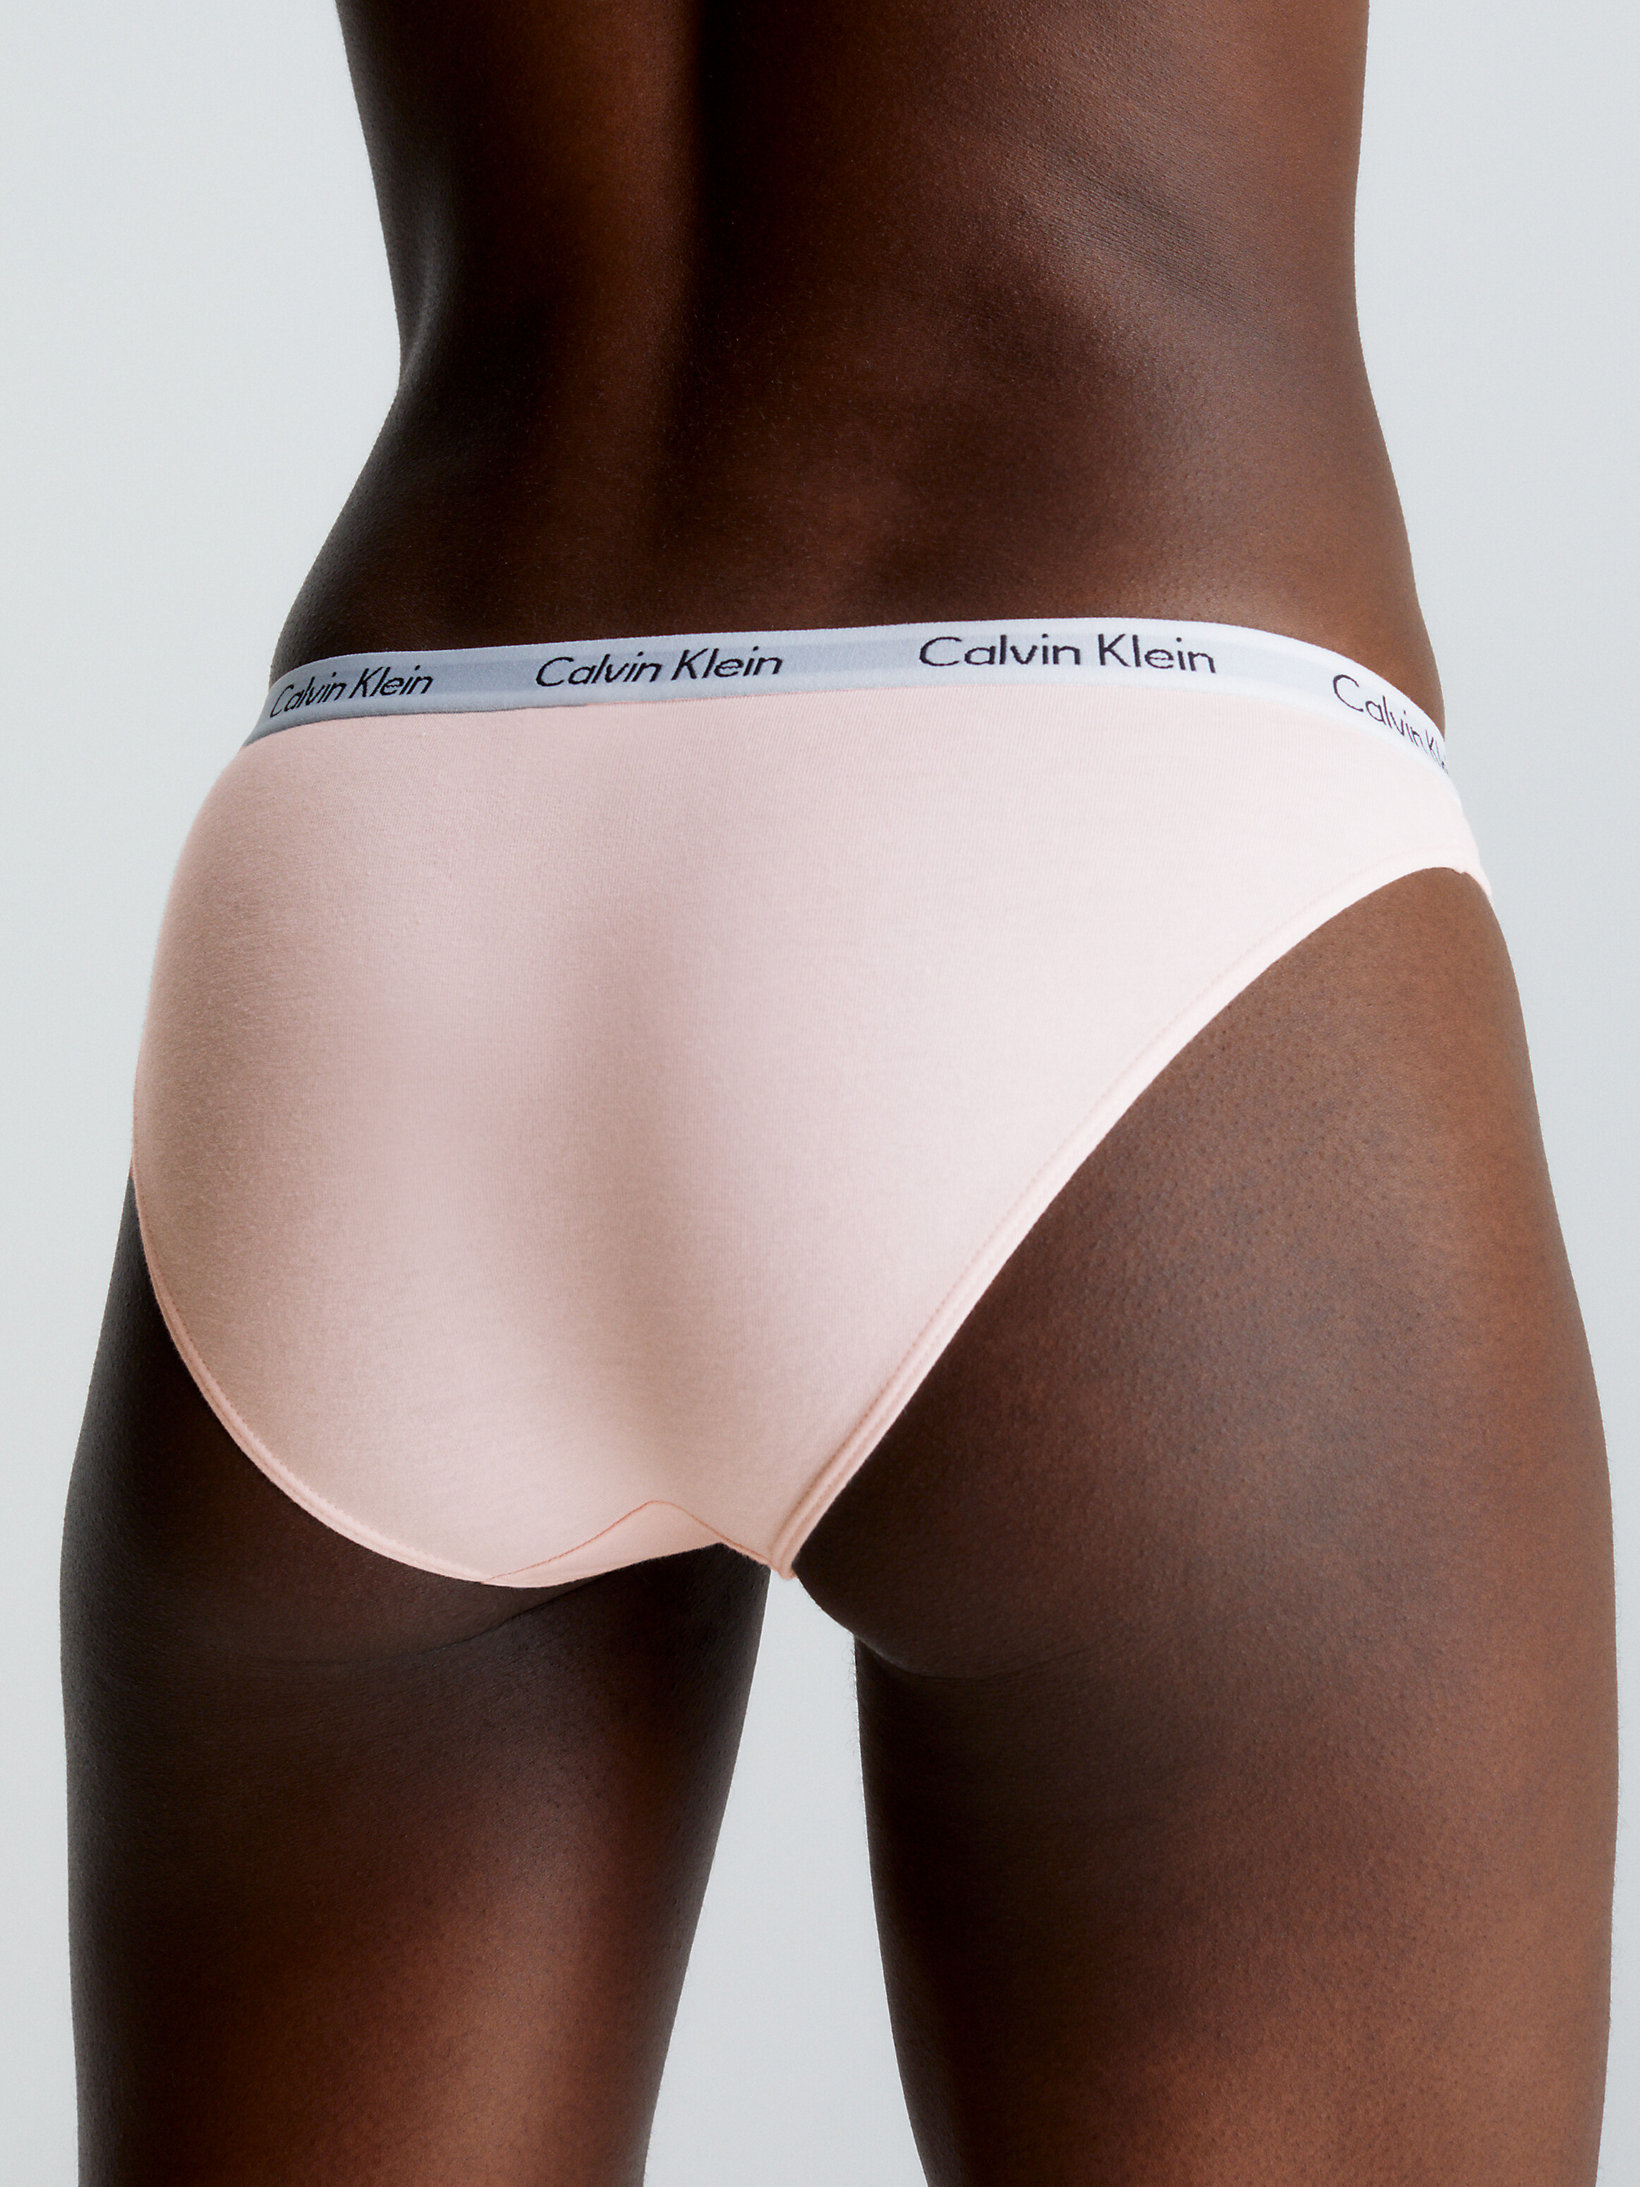 Nymphs Thigh > Slip – Carousel > undefined Damen - Calvin Klein